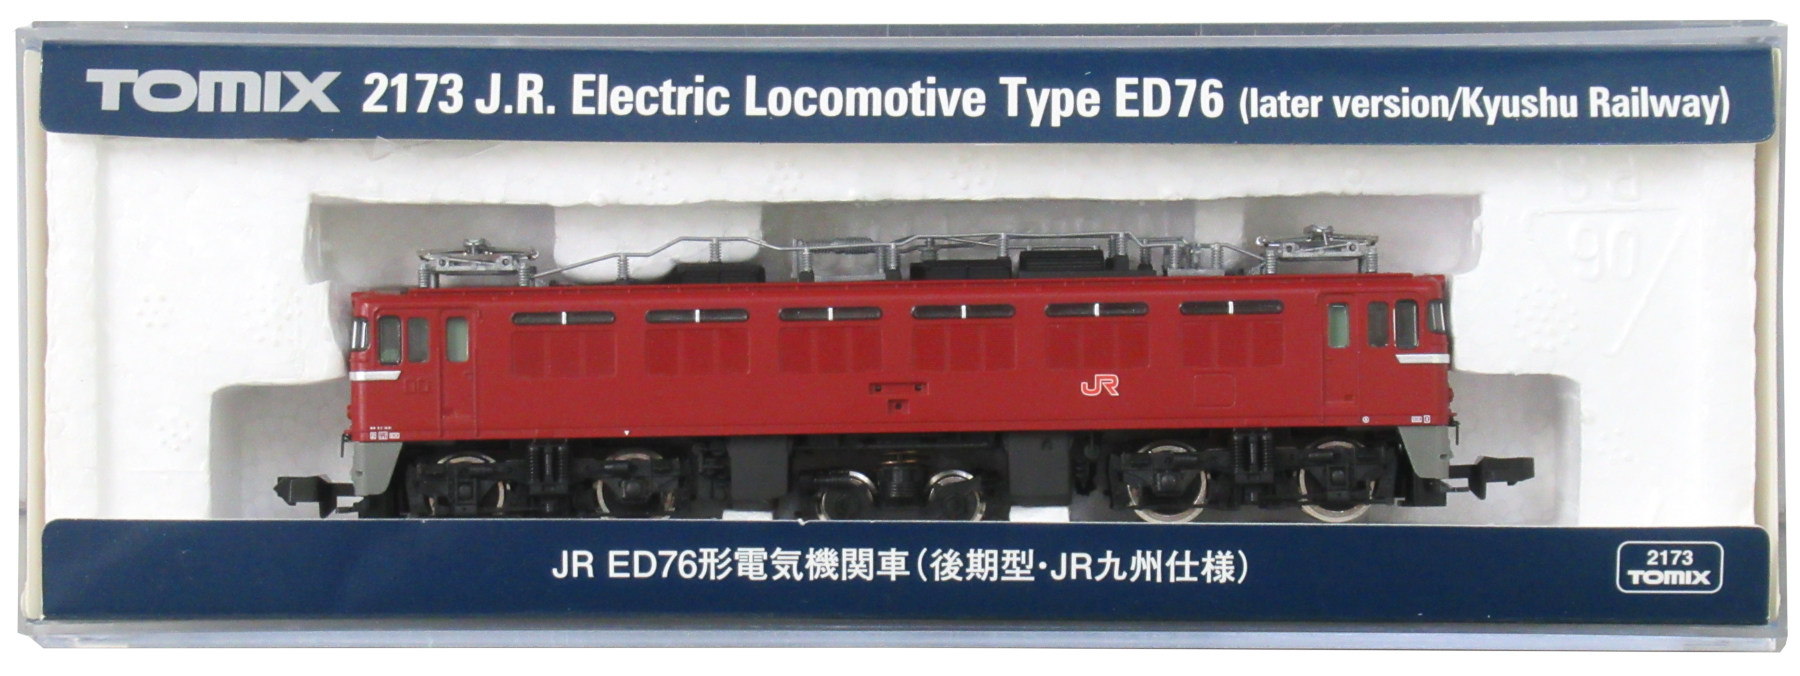 公式]鉄道模型(2173JR ED76形 電気機関車 (後期型・JR九州仕様))商品 